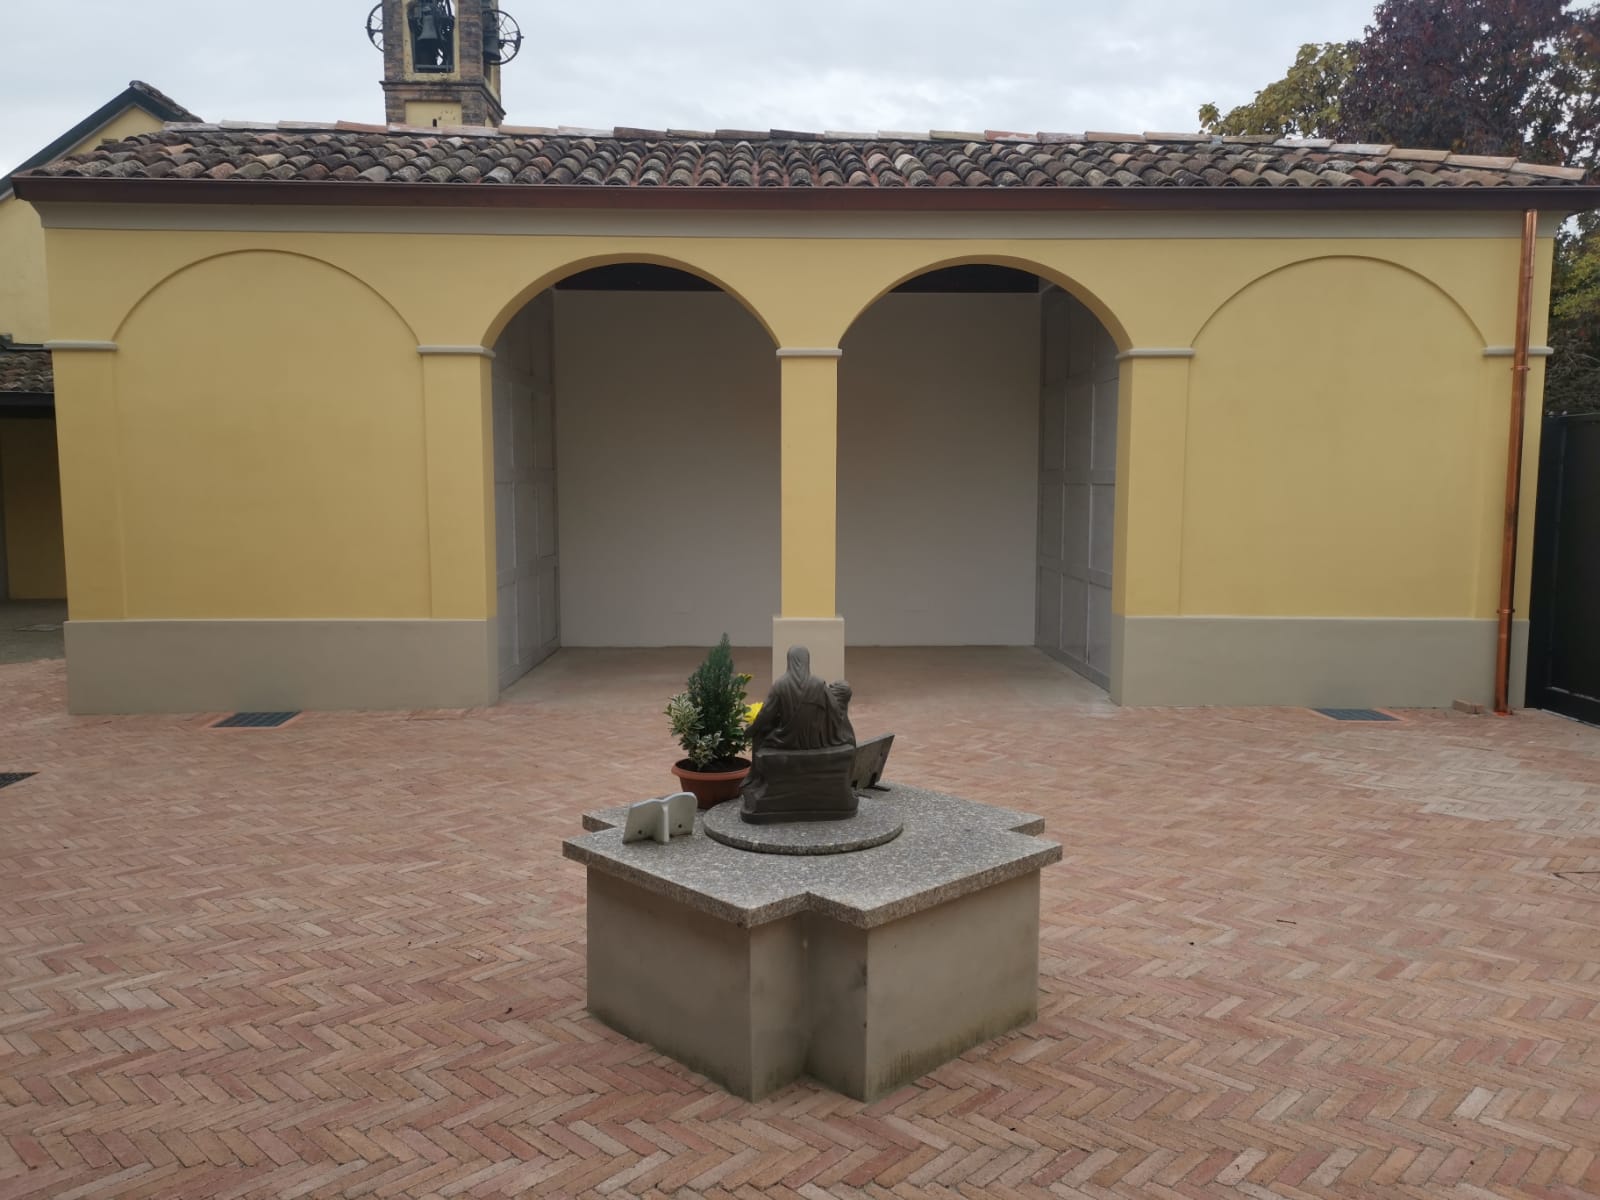 Casale Cremasco, finiti i lavori di restauro del cimitero del paese